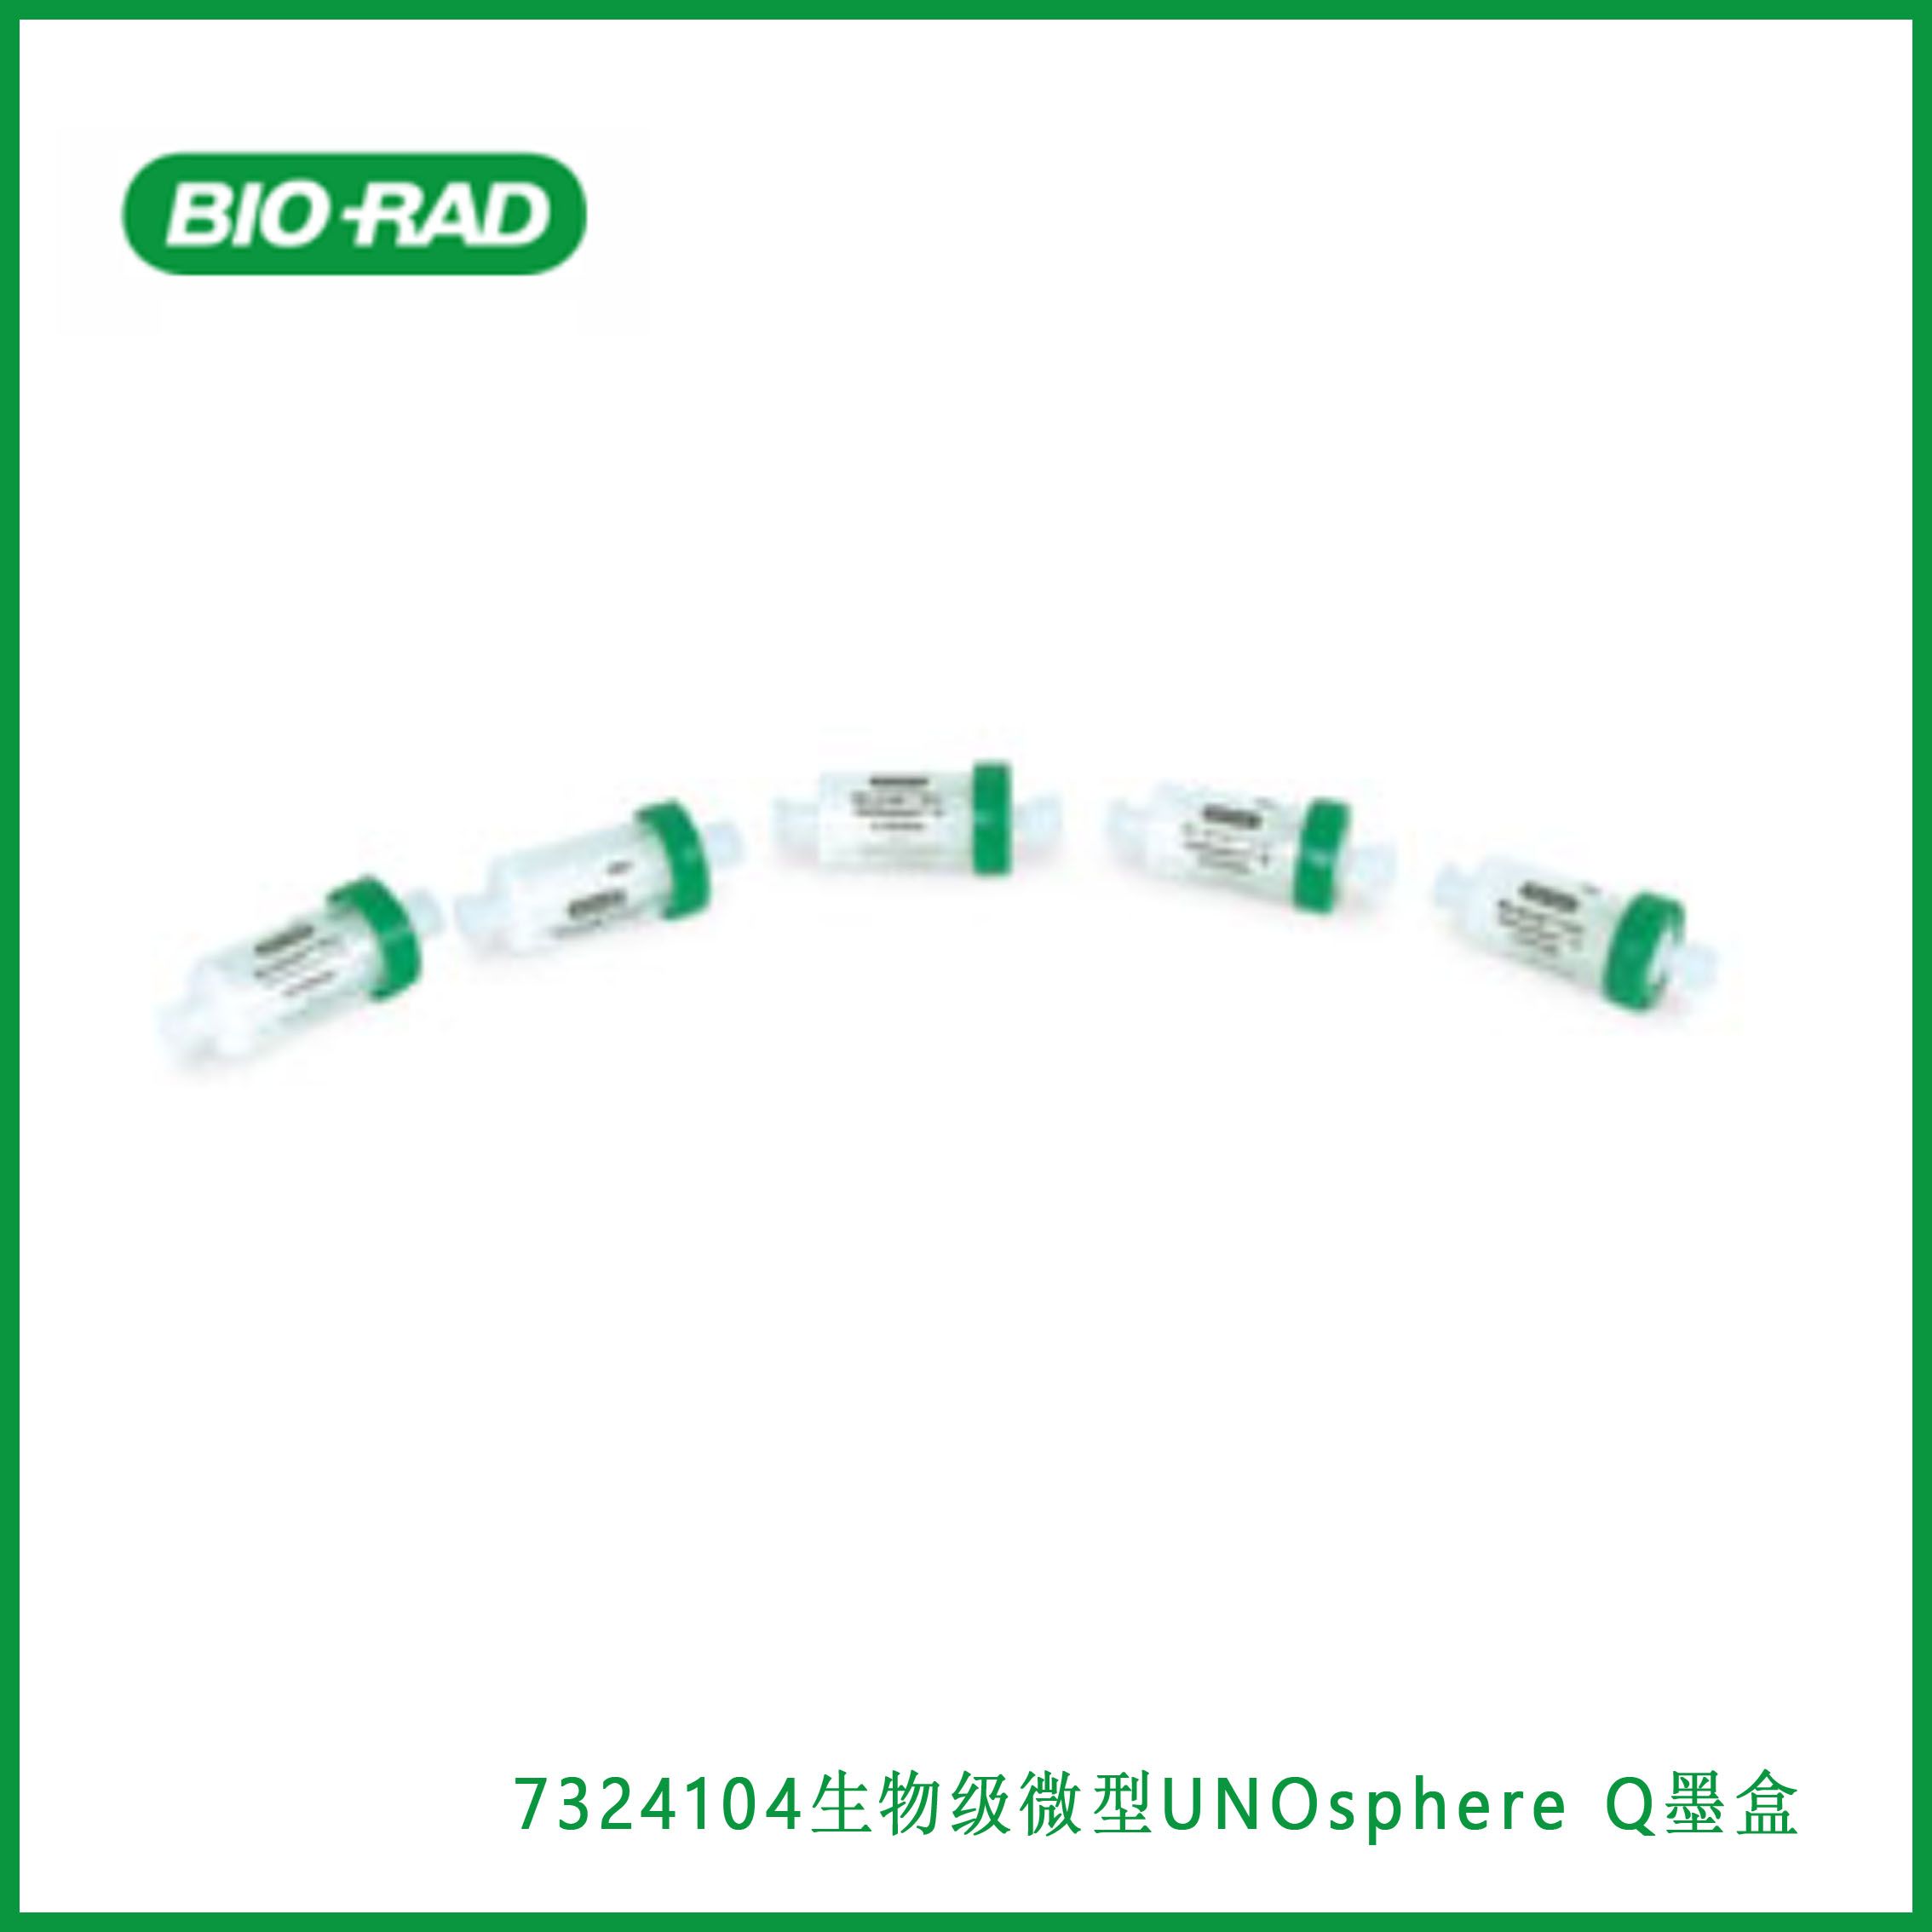 伯乐Bio-Rad7324104Bio-Scale Mini UNOsphere Q Cartridges， 生物级微型UNOsphere Q墨盒，现货